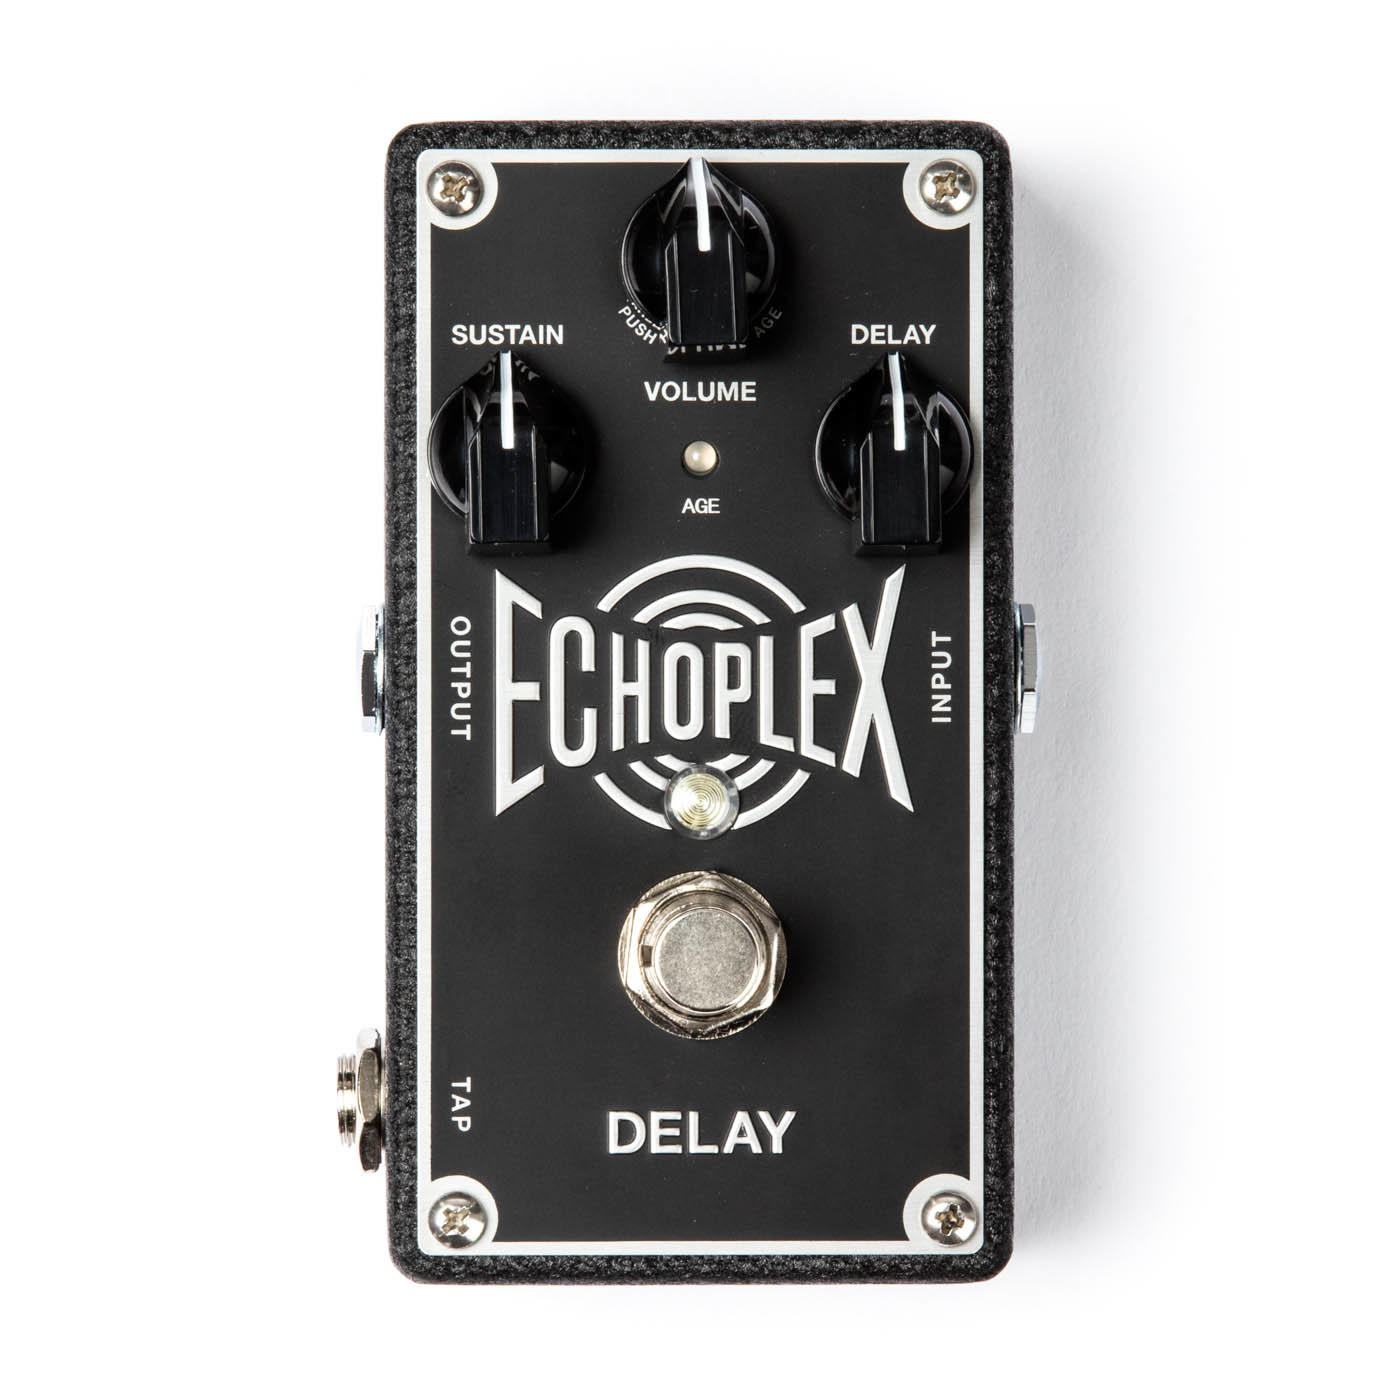 Dunlop Echoplex Delay - EP103